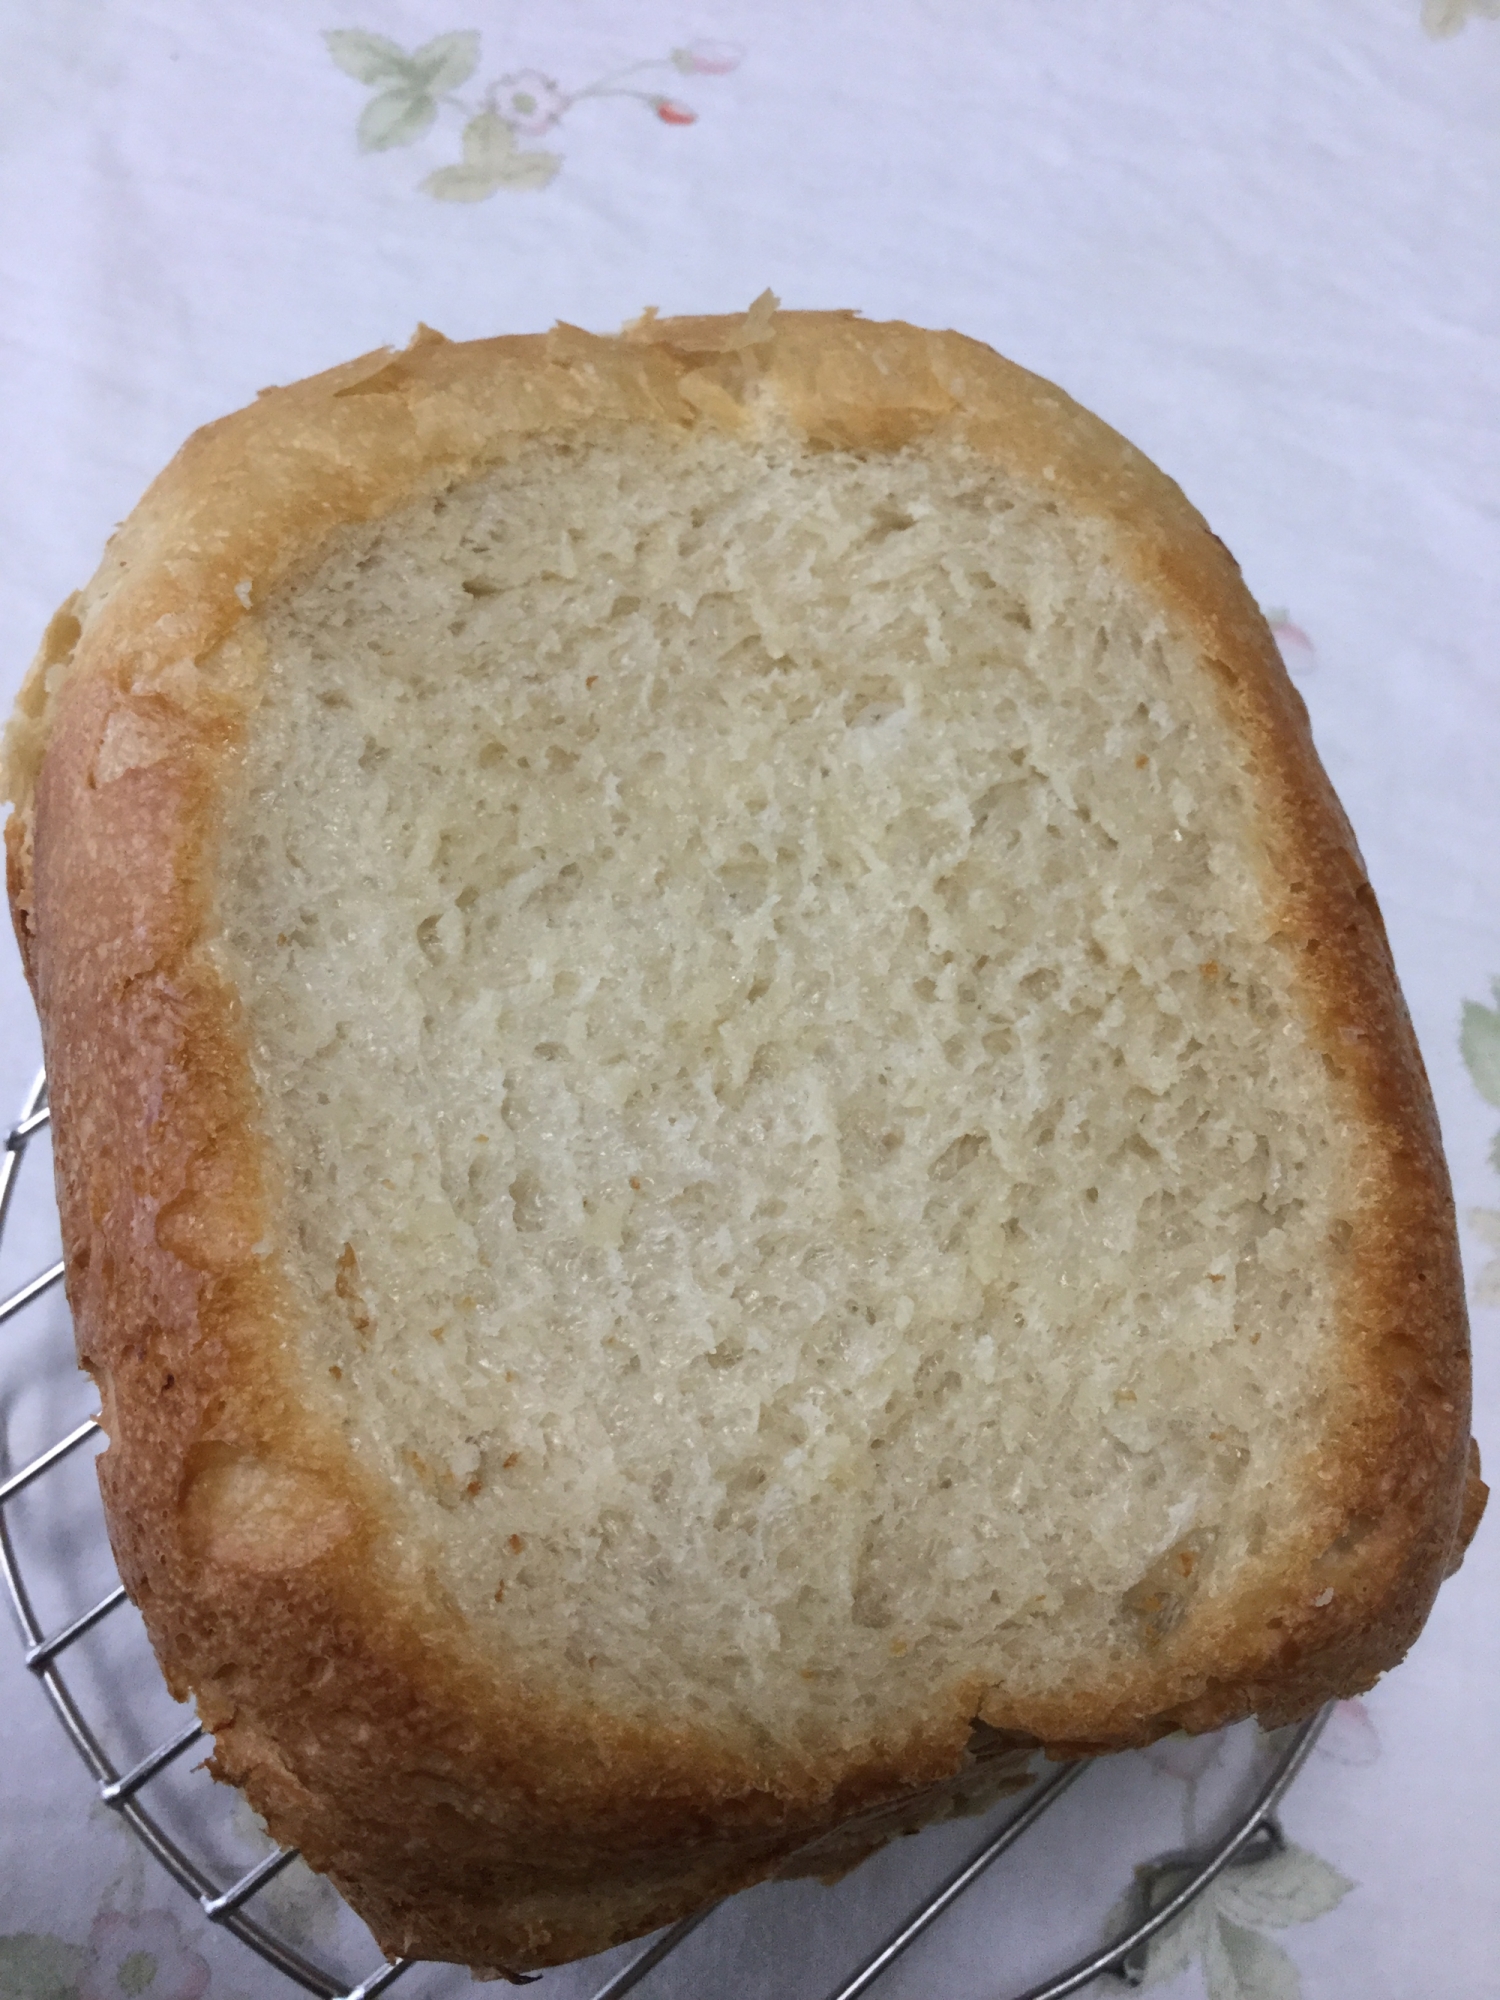 米粉入り食パン